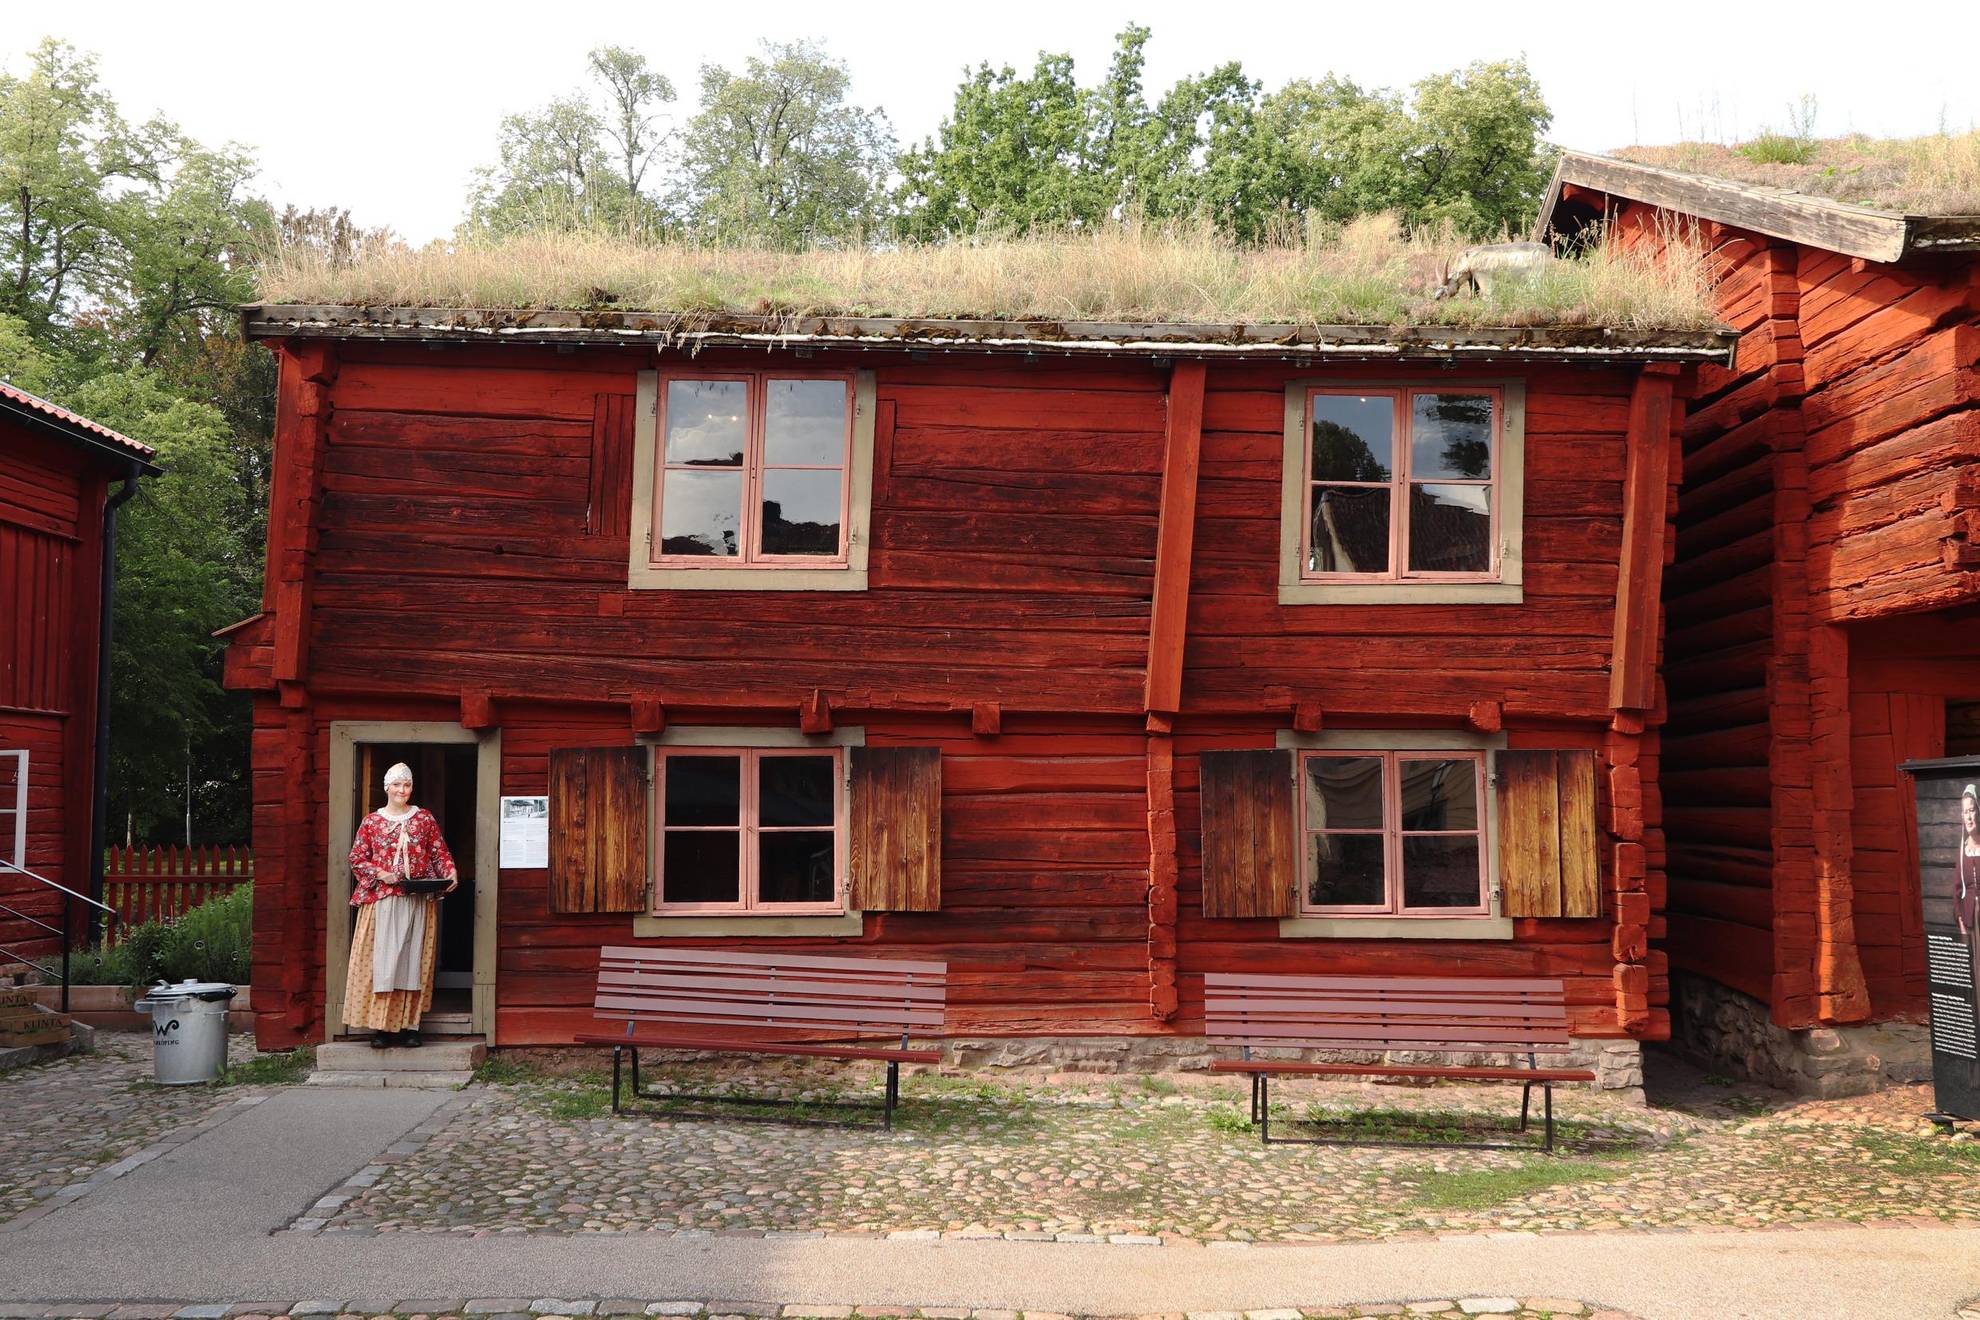 Een oud rood geschilderd houten huis met een zodendak. Bij de ingang van het huis staat een vrouw.